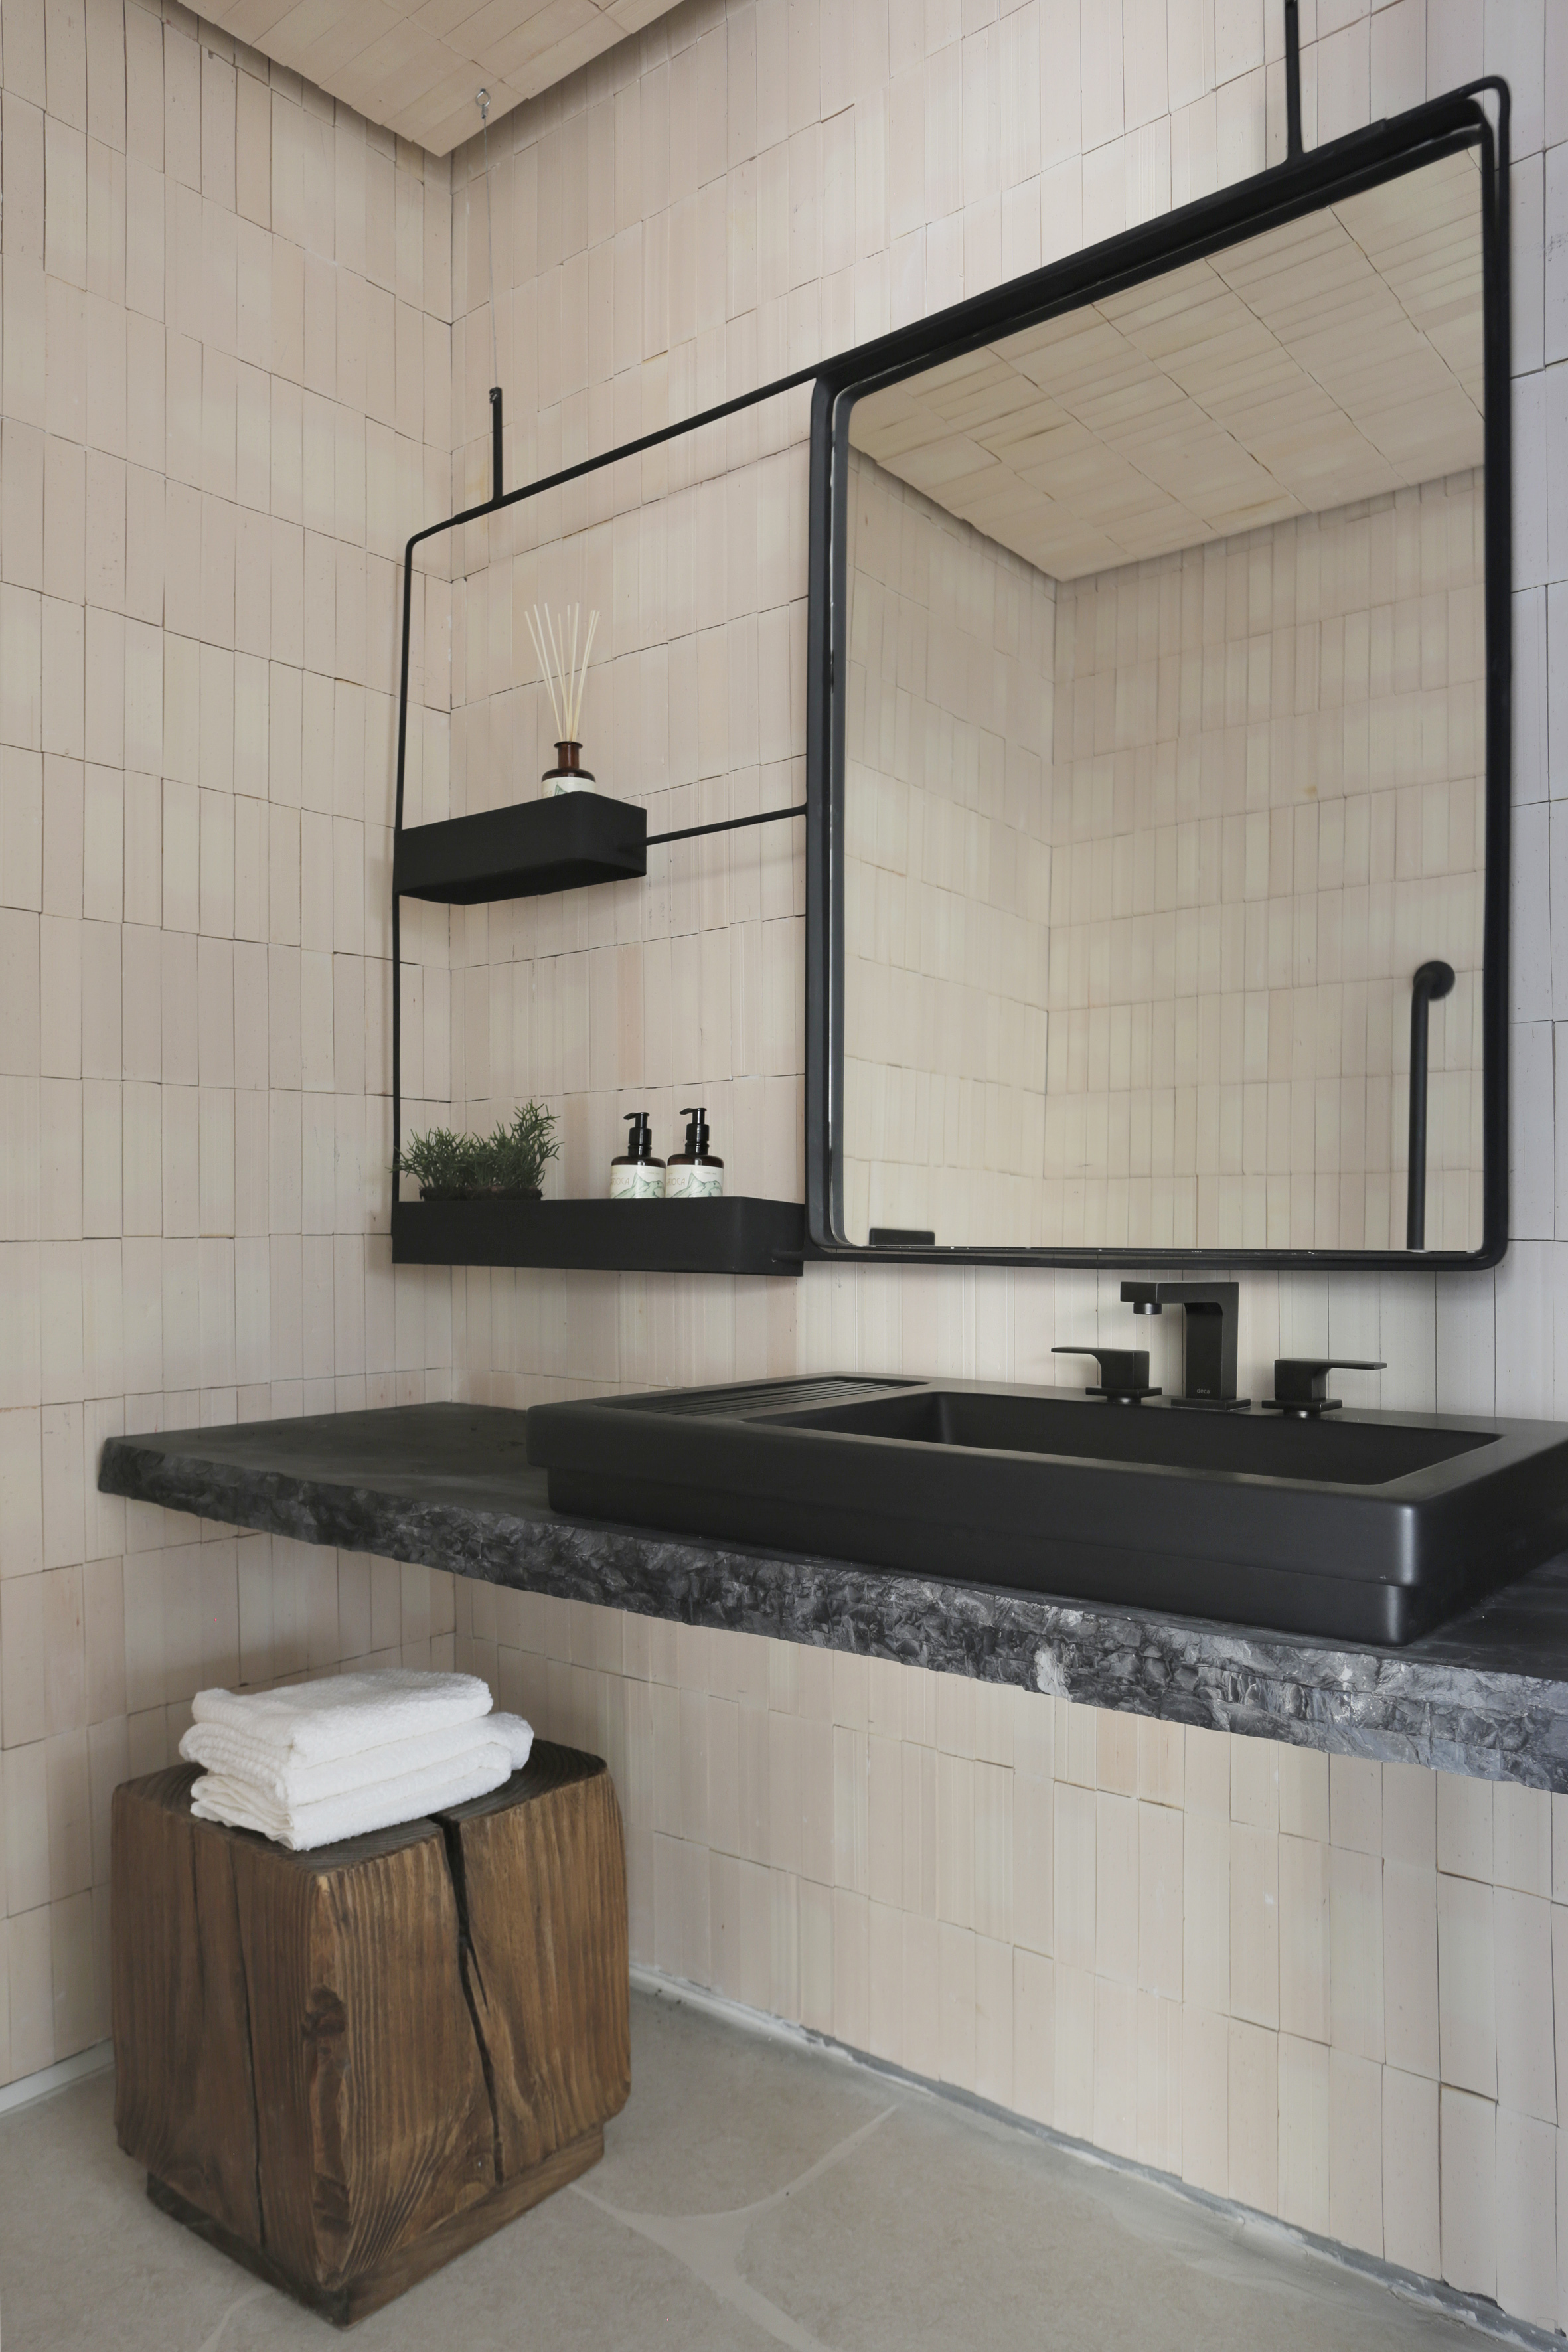 Área intima do banheiro com cuba em inox preto, espelhos com bordas pretas, mesinha em madeira natural, bancada de mármore e azulejos na cor beje.